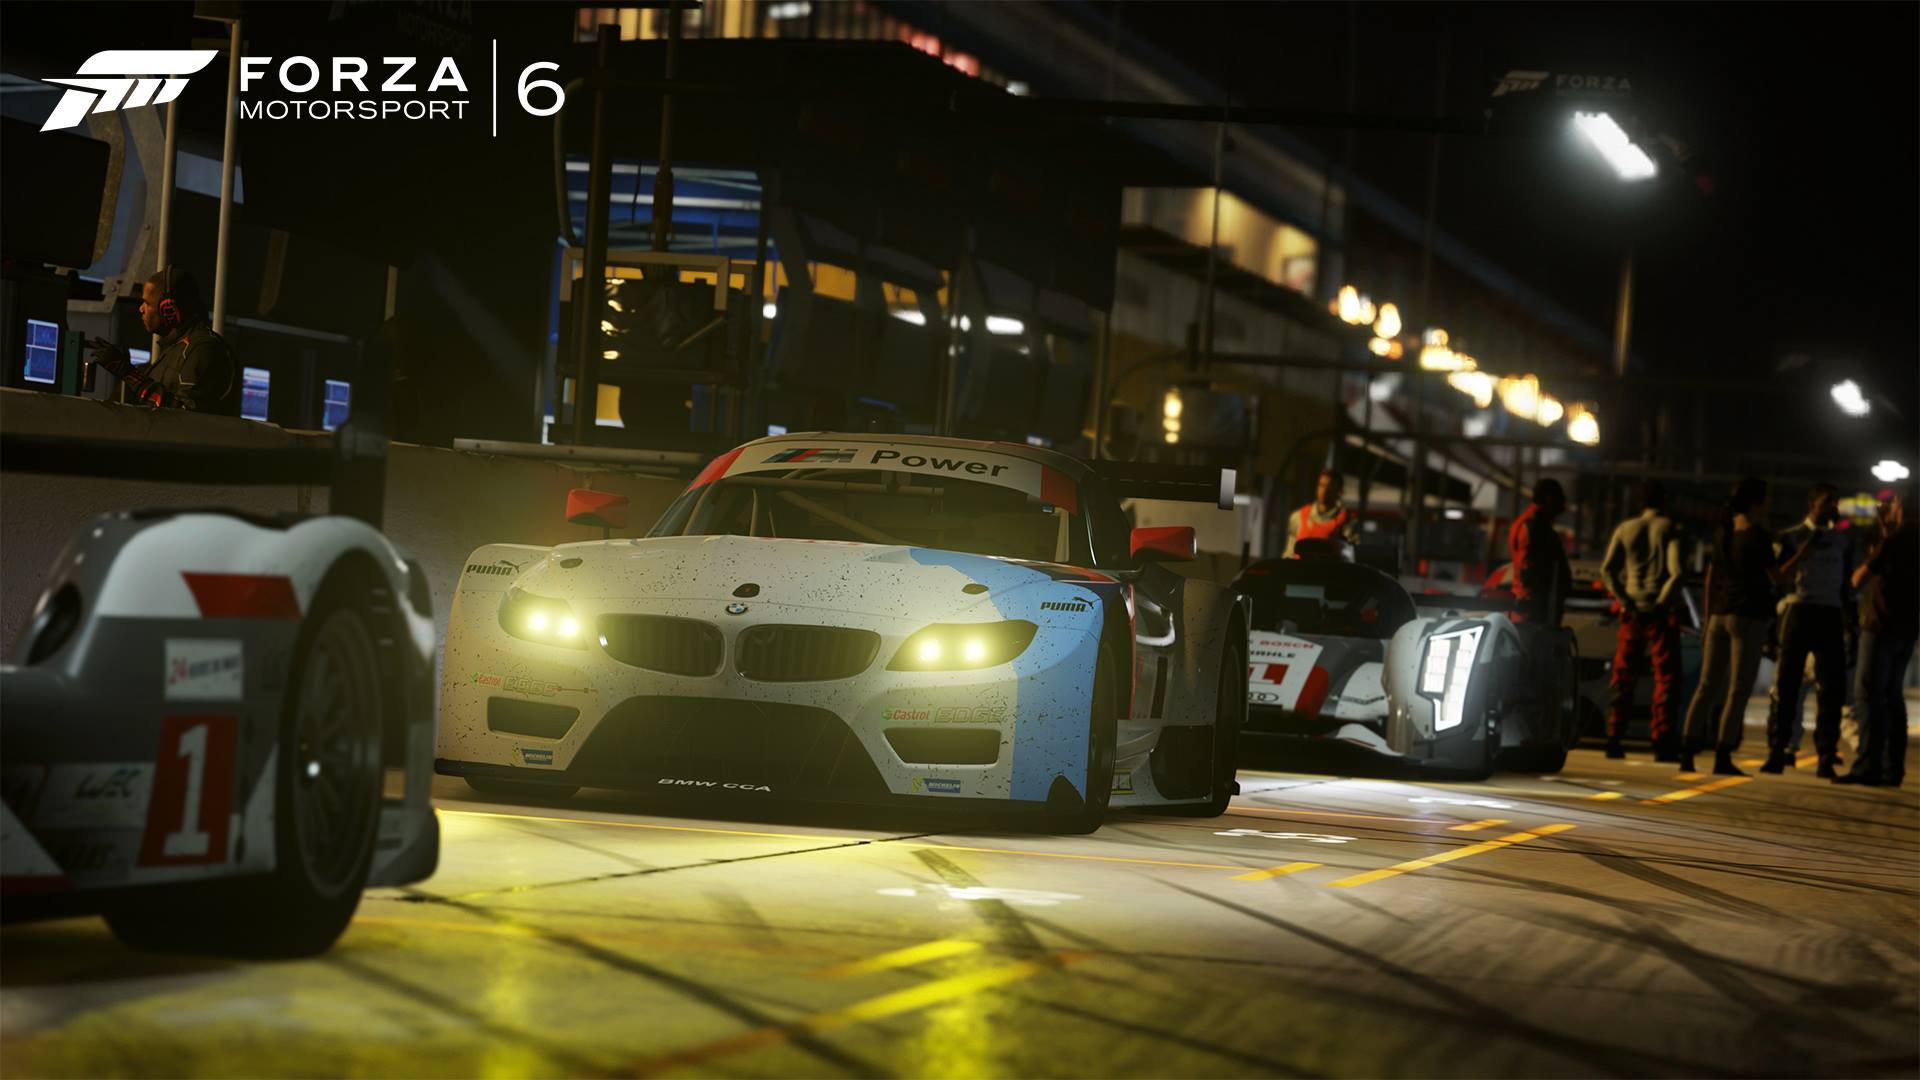 Forza Motorsport 6 Review Team Vvv